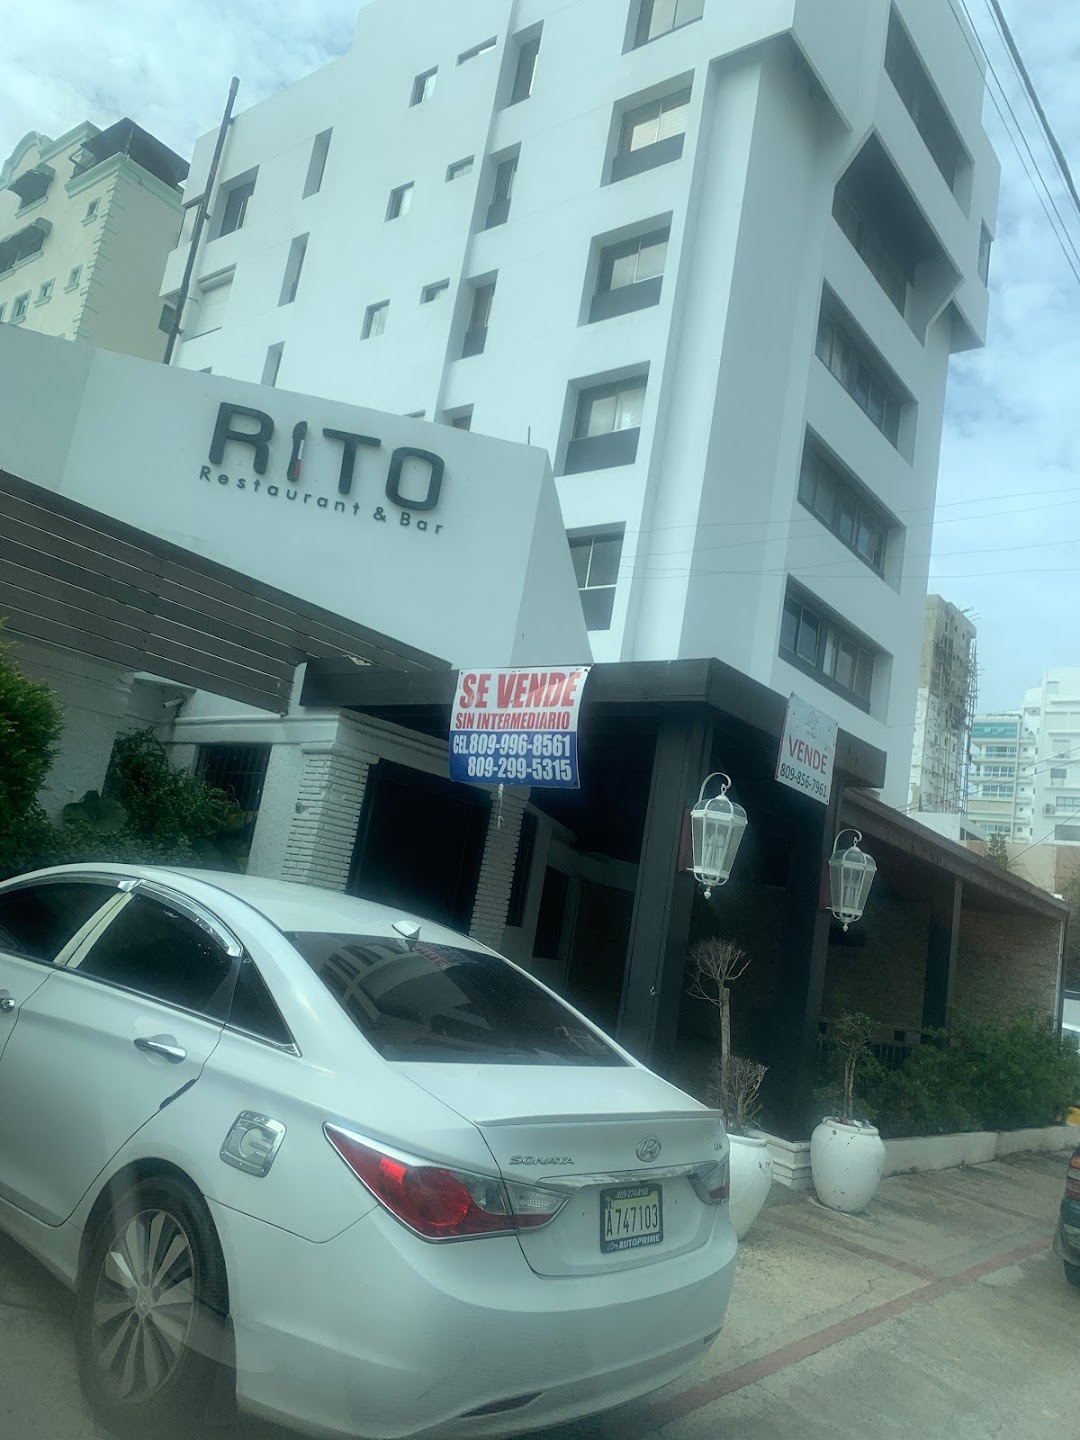 Rito Restaurante Bar